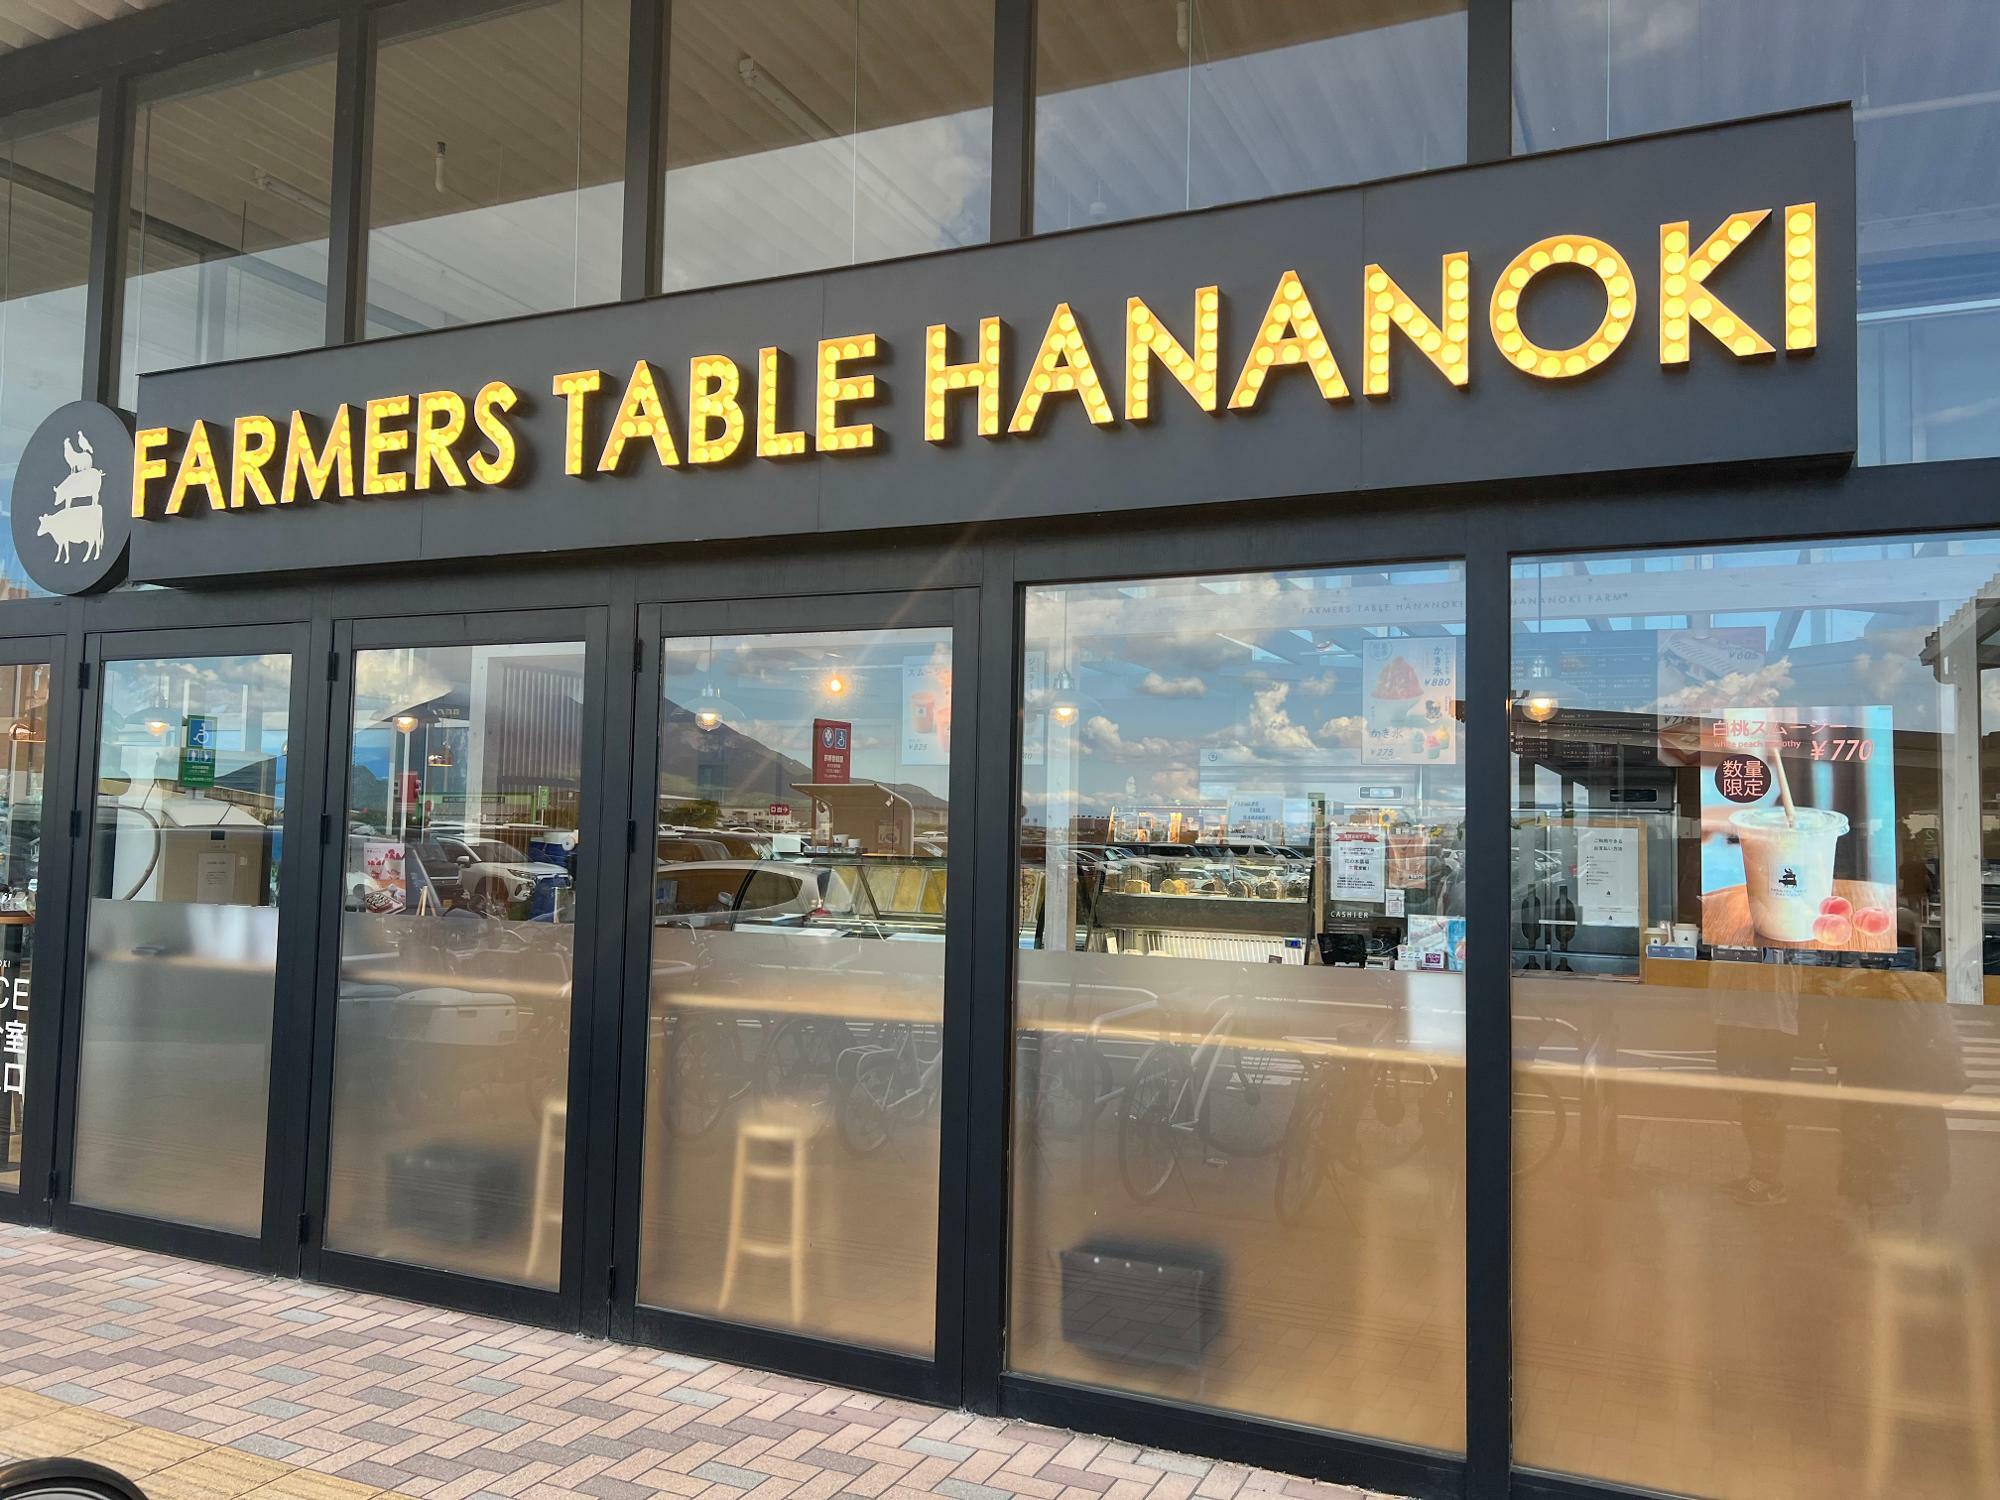 イオンモール鹿児島の「FARMERS TABLE HANANOKI」